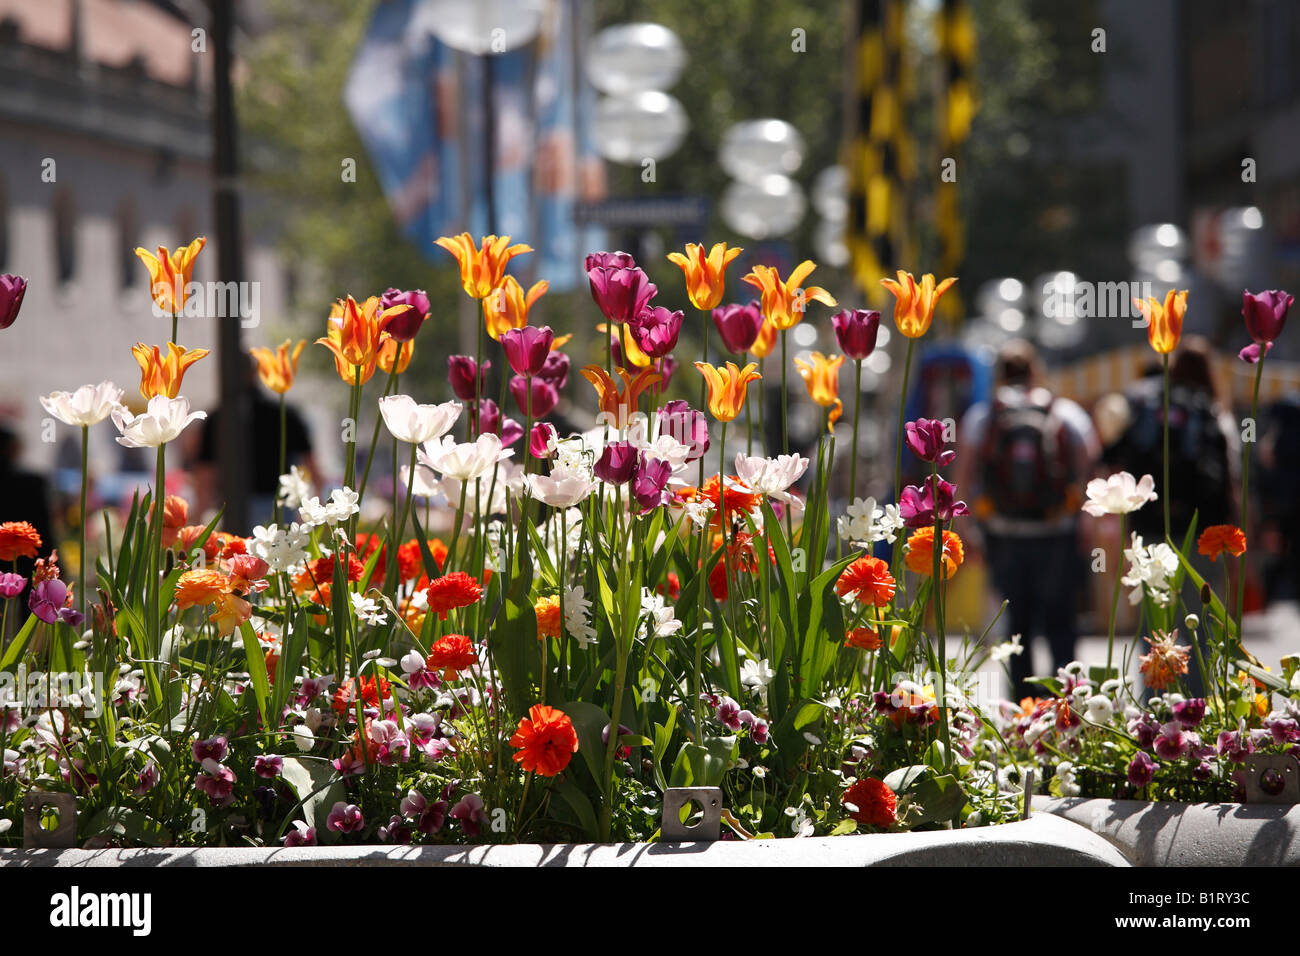 Spring flowers in pedestrian area, Neuhauser Strasse, Munich, Upper Bavaria, Germany, Europe Stock Photo